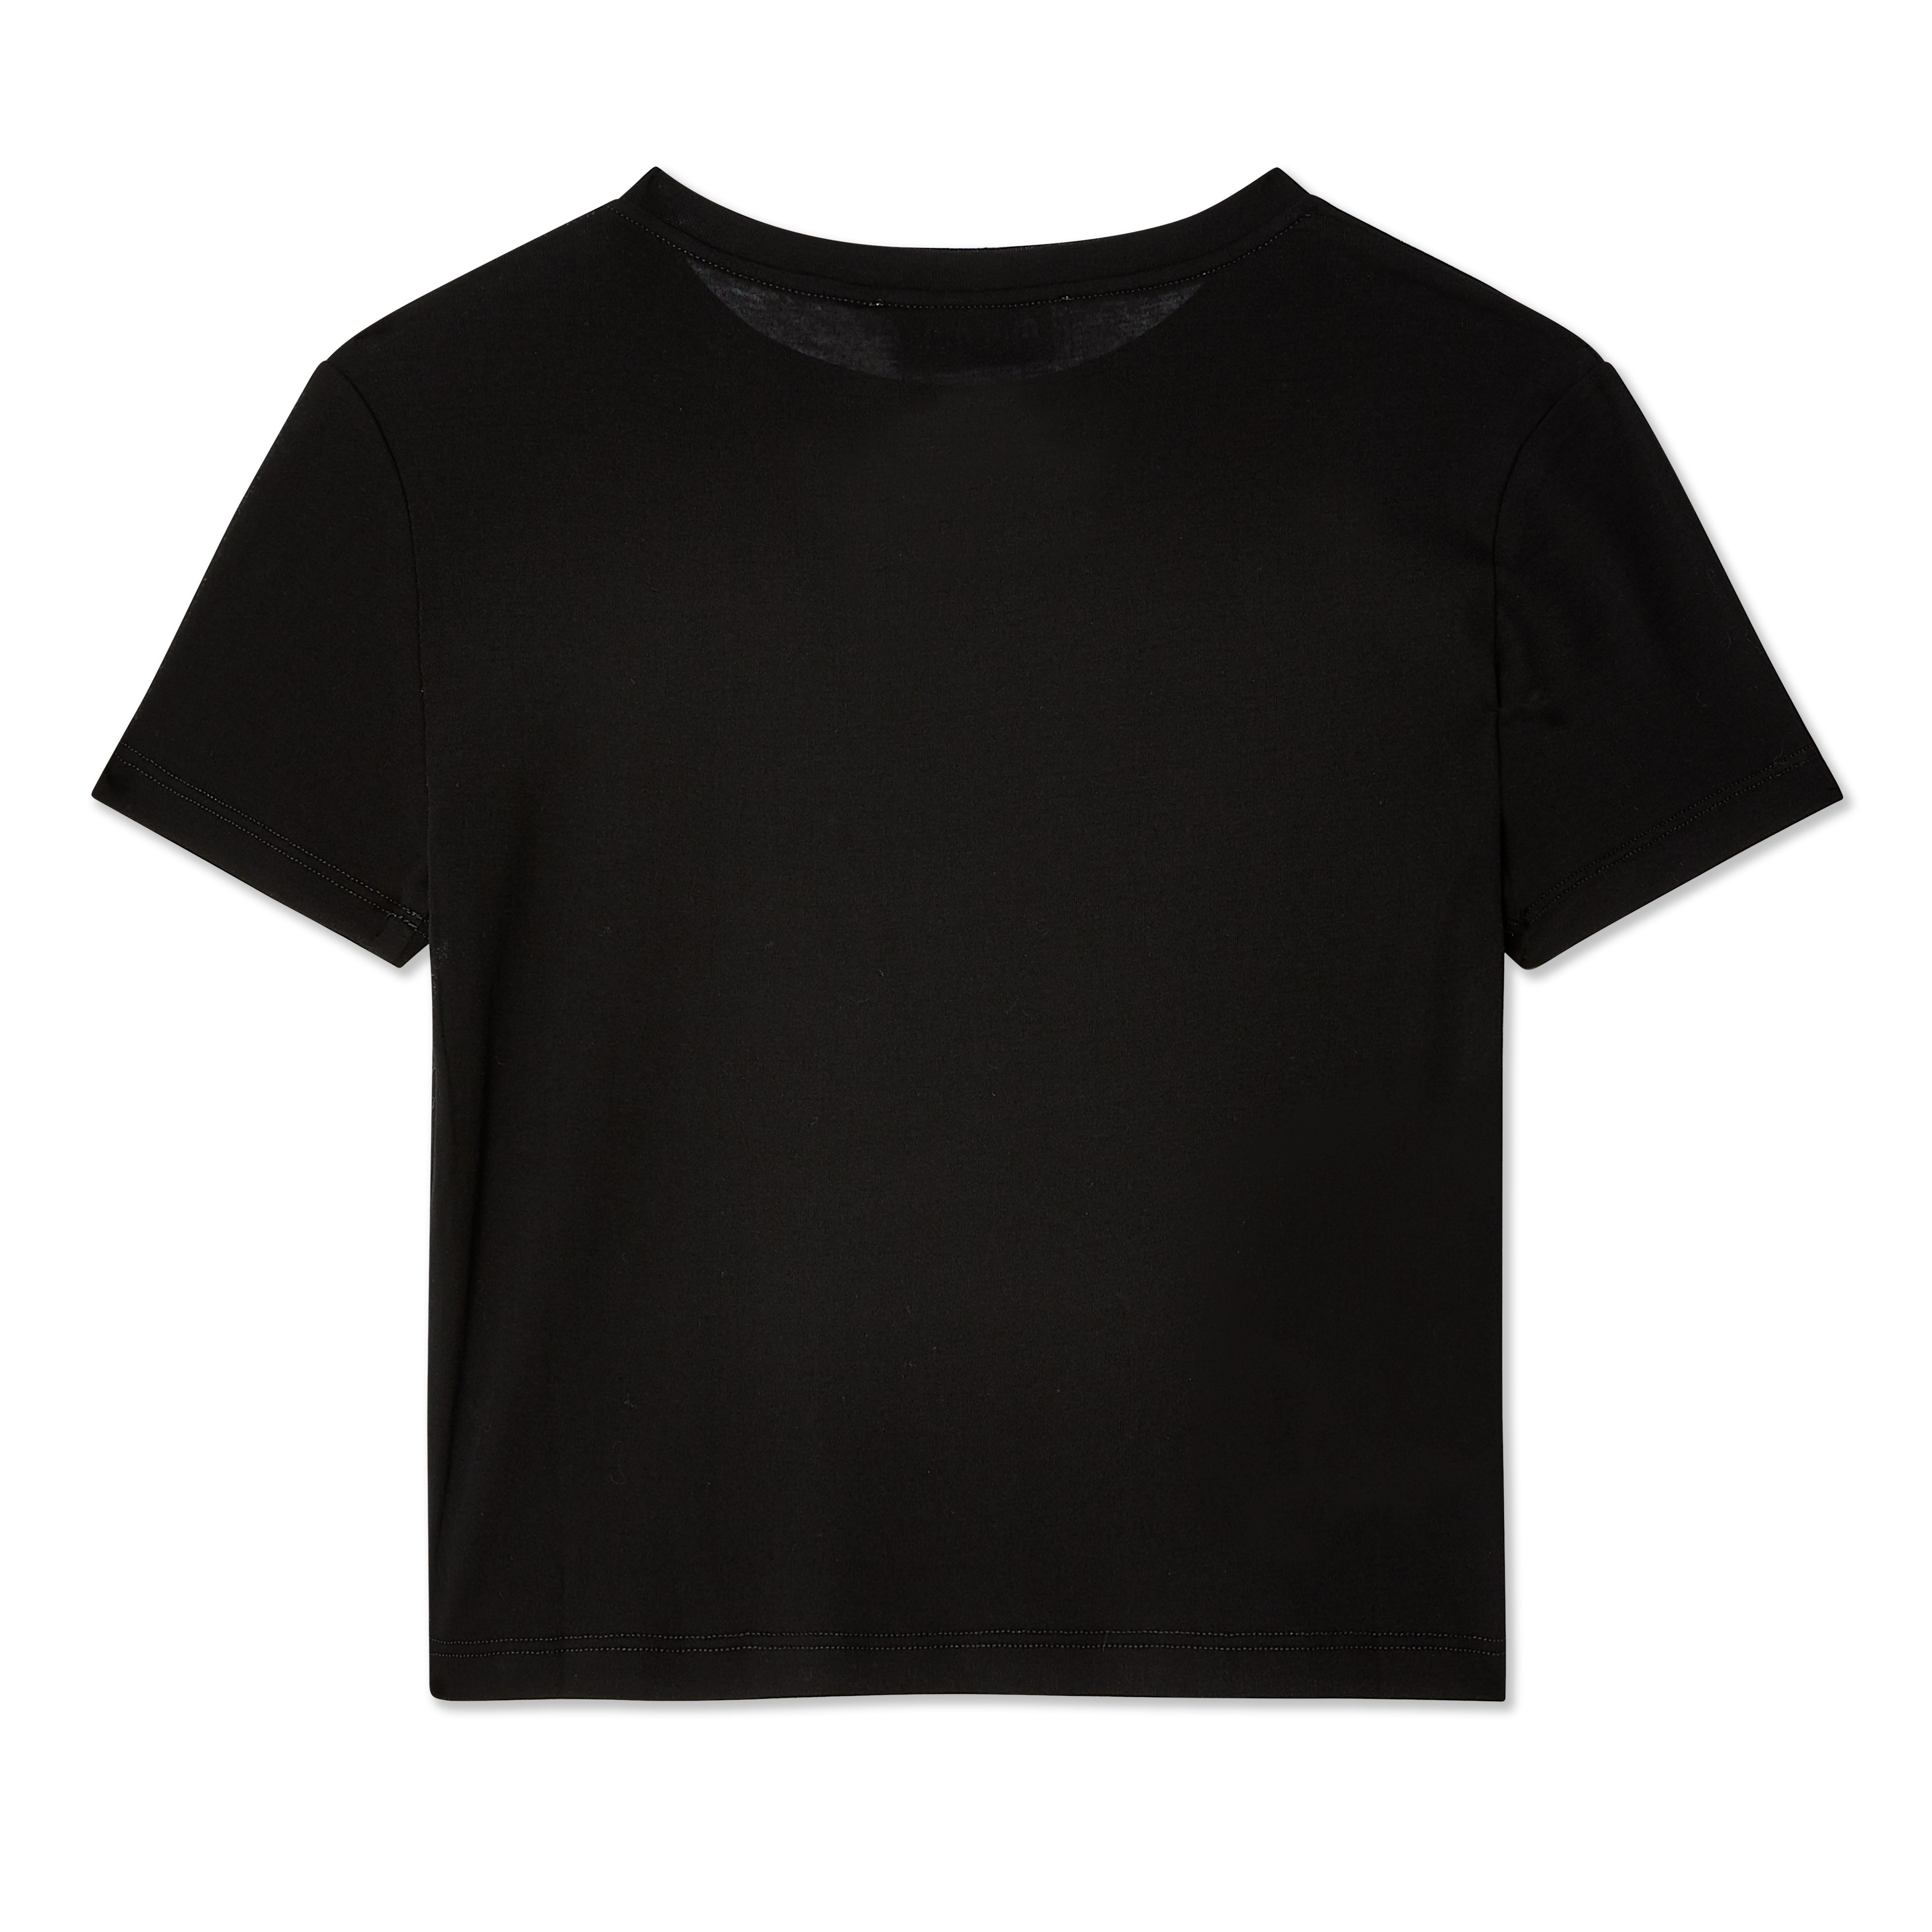 Miu Miu - Women's Ribbed Jersey T-Shirt - (Black)